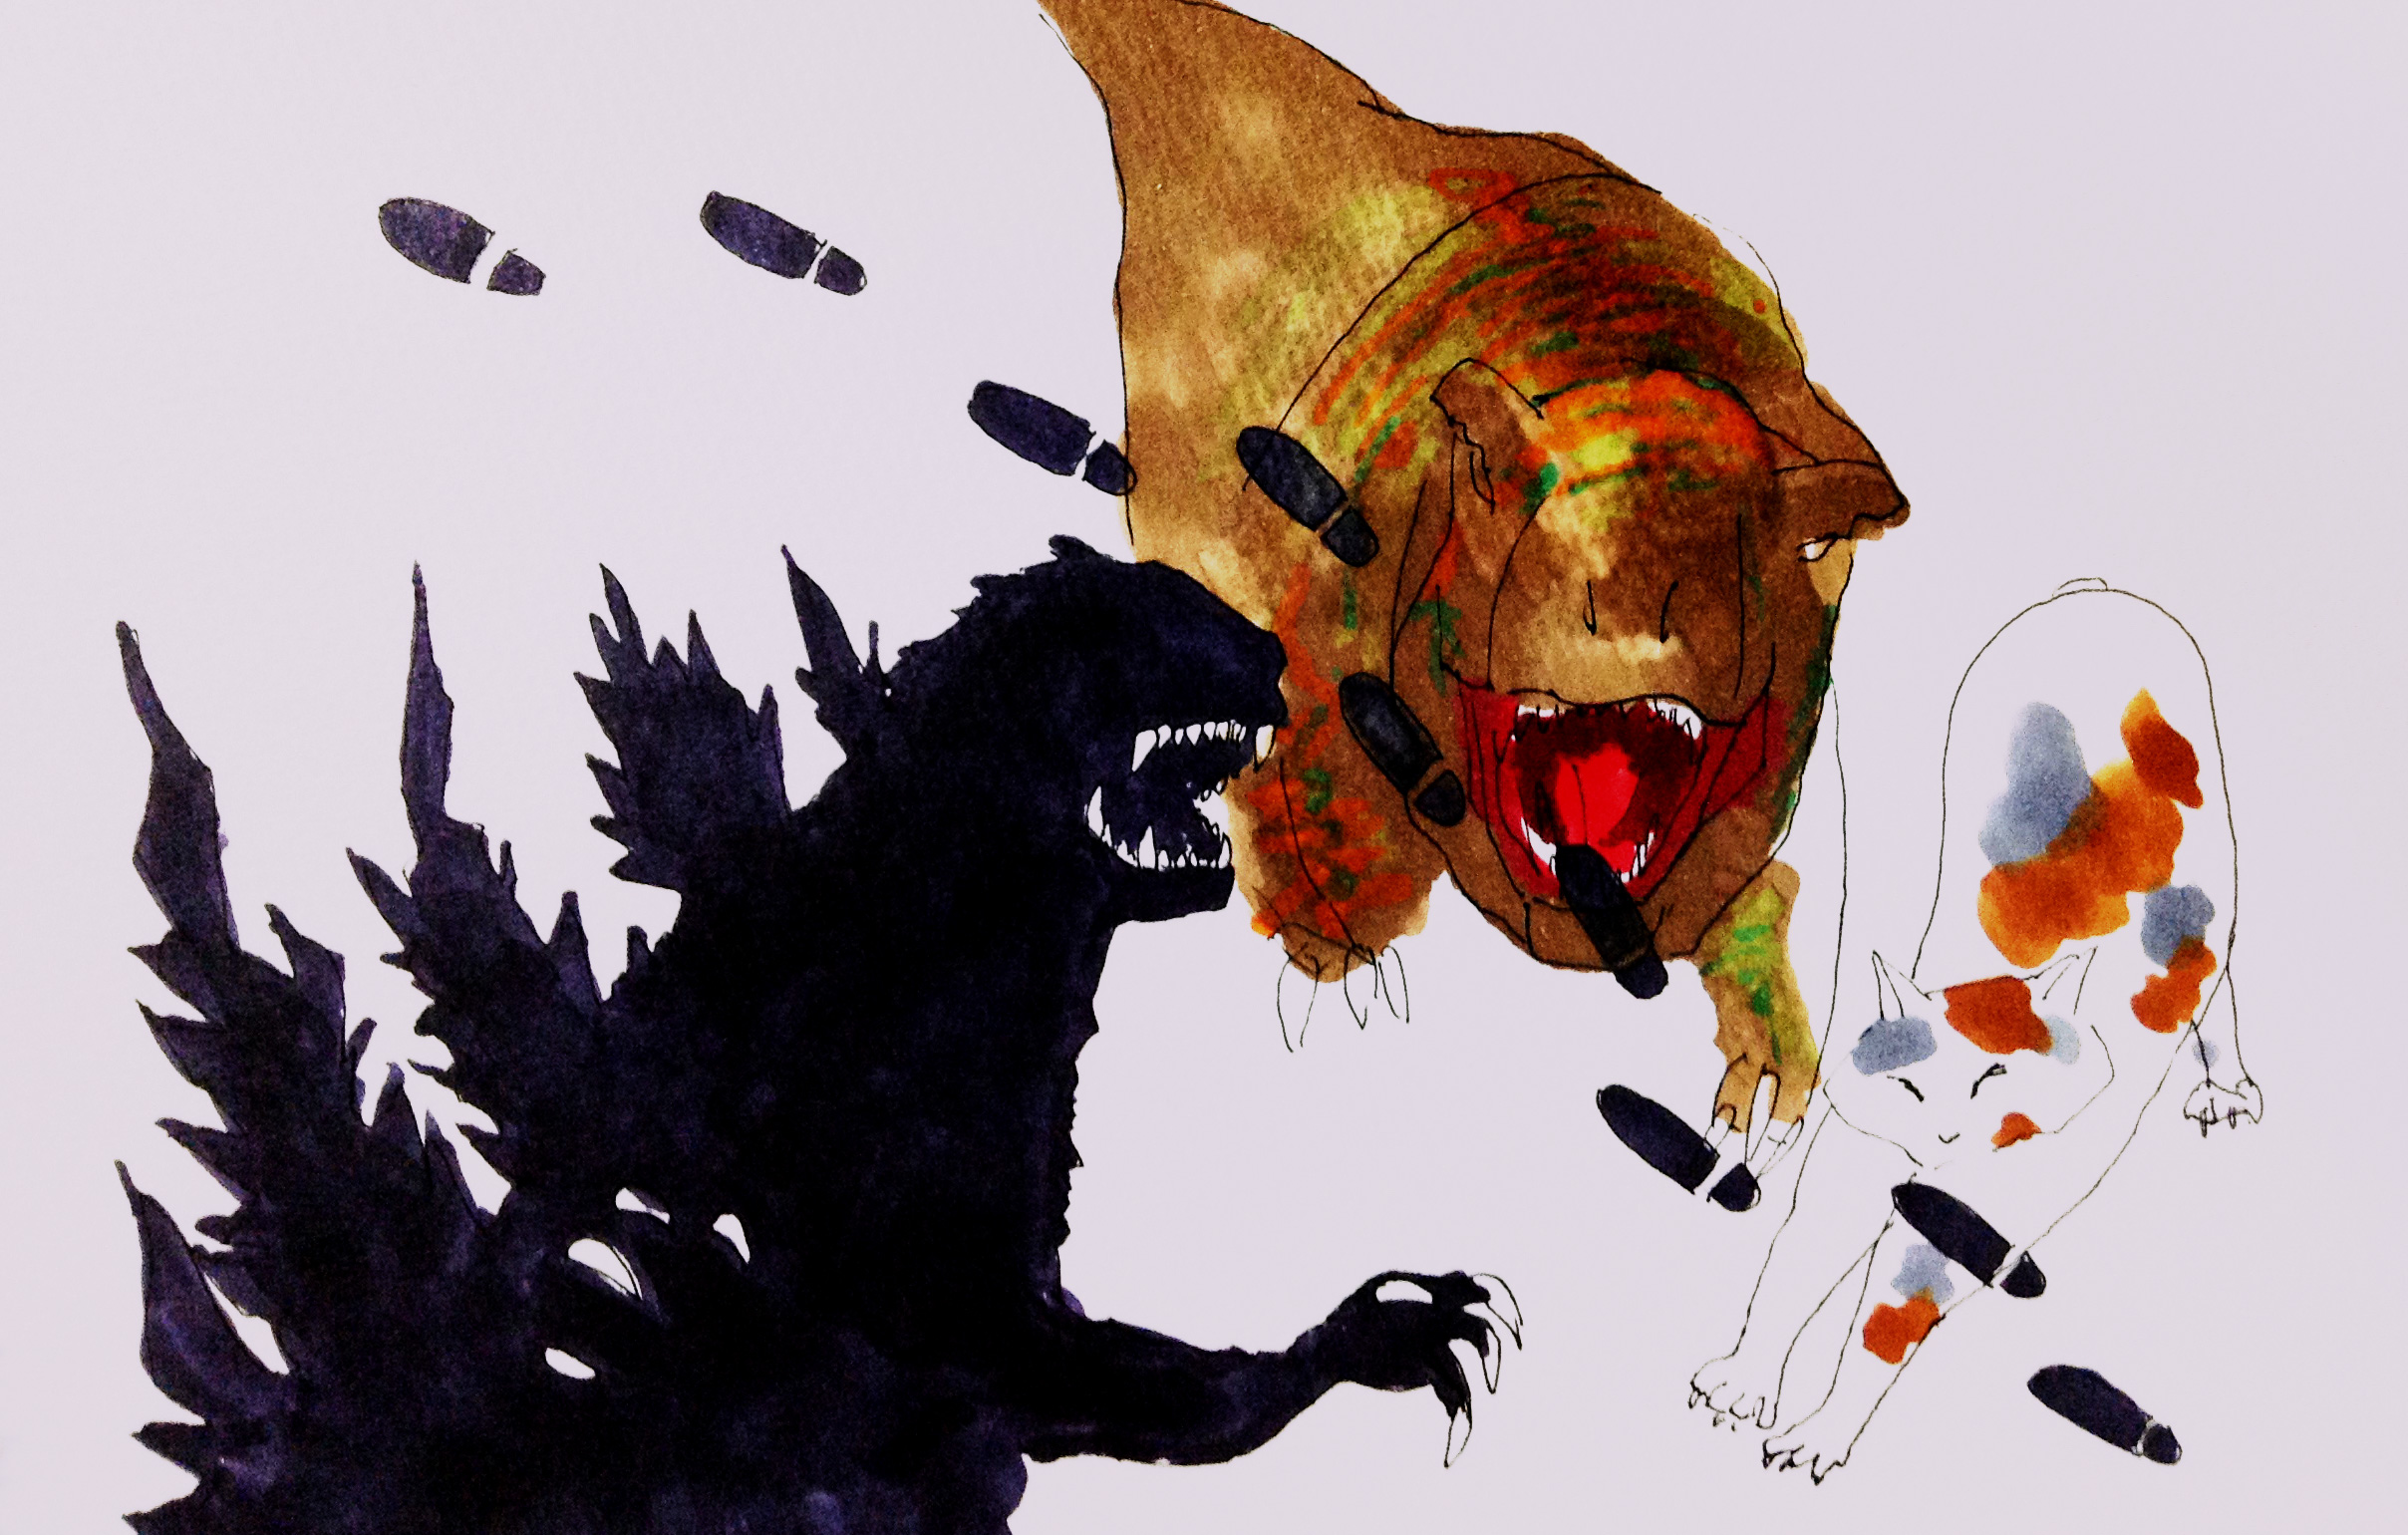 ゴジラ立ち、ティラノサウルス、ネコののびの姿をコピックで描いたイラスト